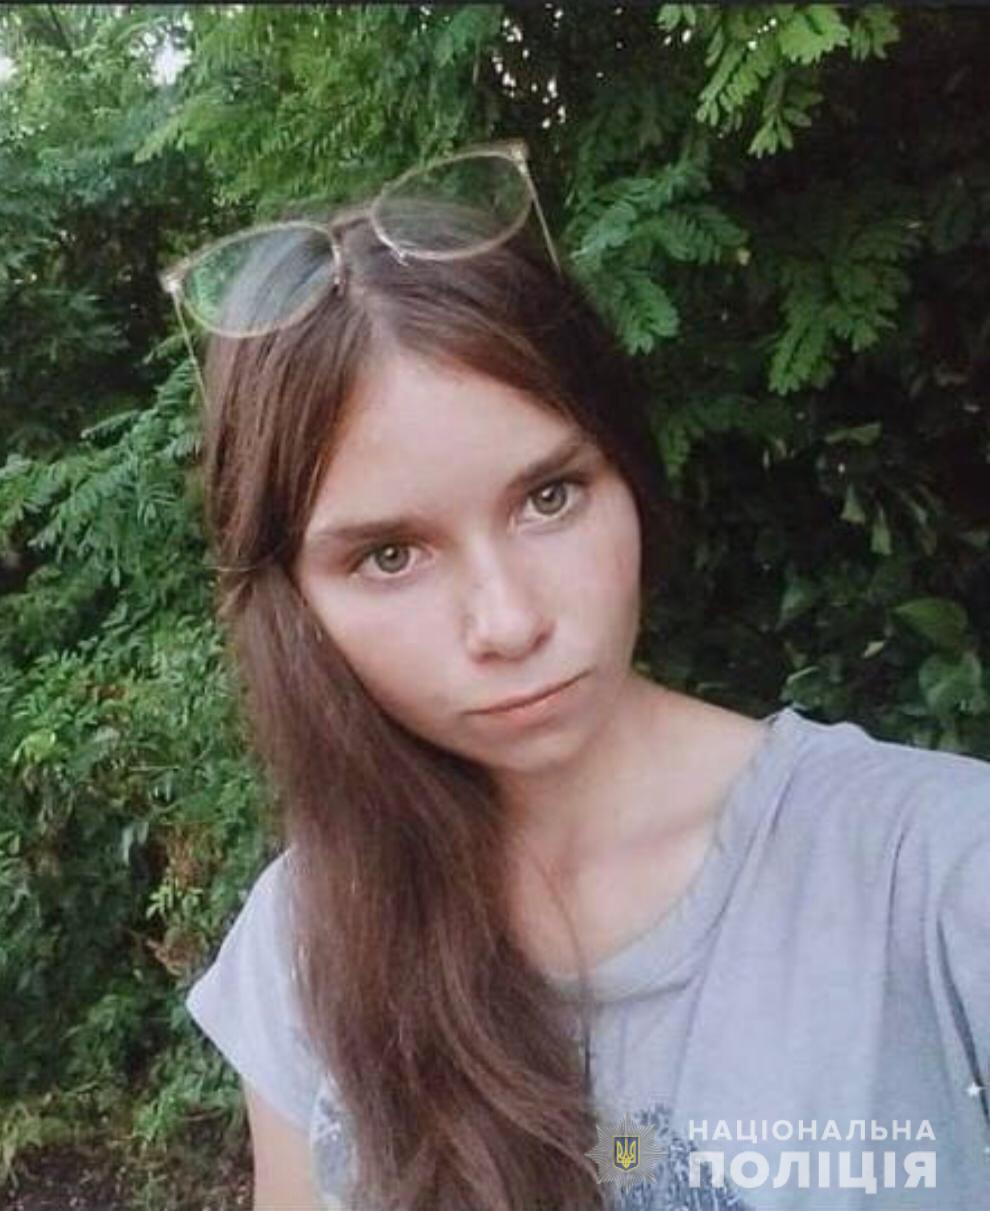 Под Кропивницким пропавшую 16-летнюю девушку обнаружили мертвой: ее тело нашли в колодце